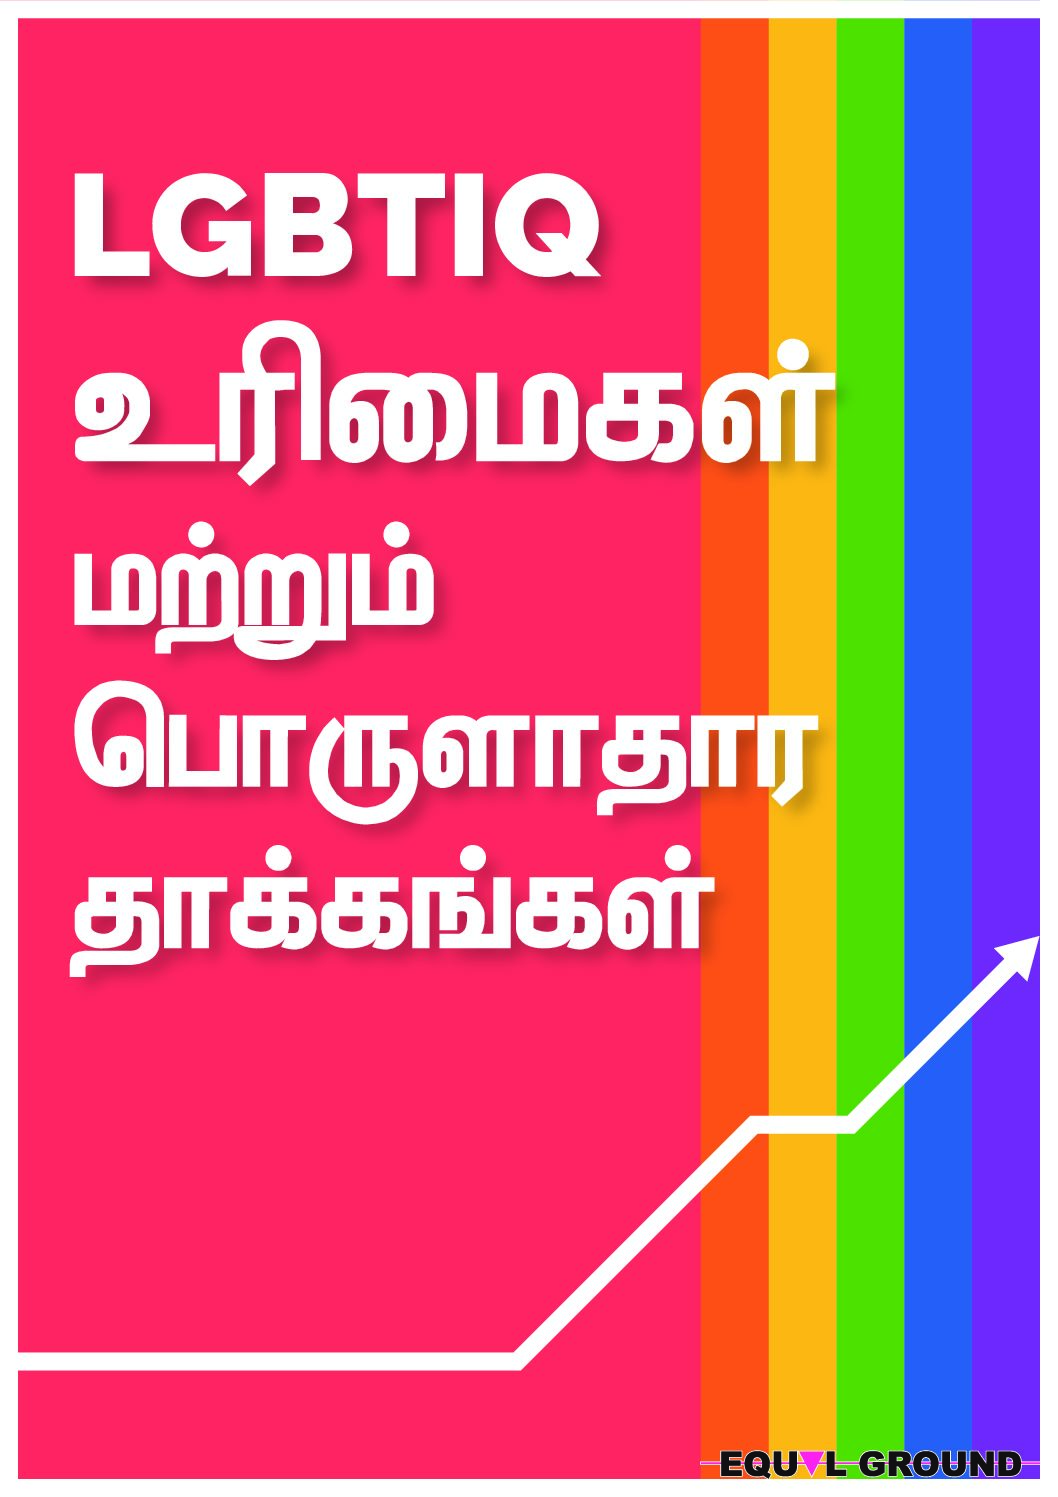 இலங்கையில் LGBTIQ நபர்களுக்கு சட்டப் பாதுகாப்பை வலுப்படுத்துதல்: நியாயப்படுத்தலுக்கான பாதை